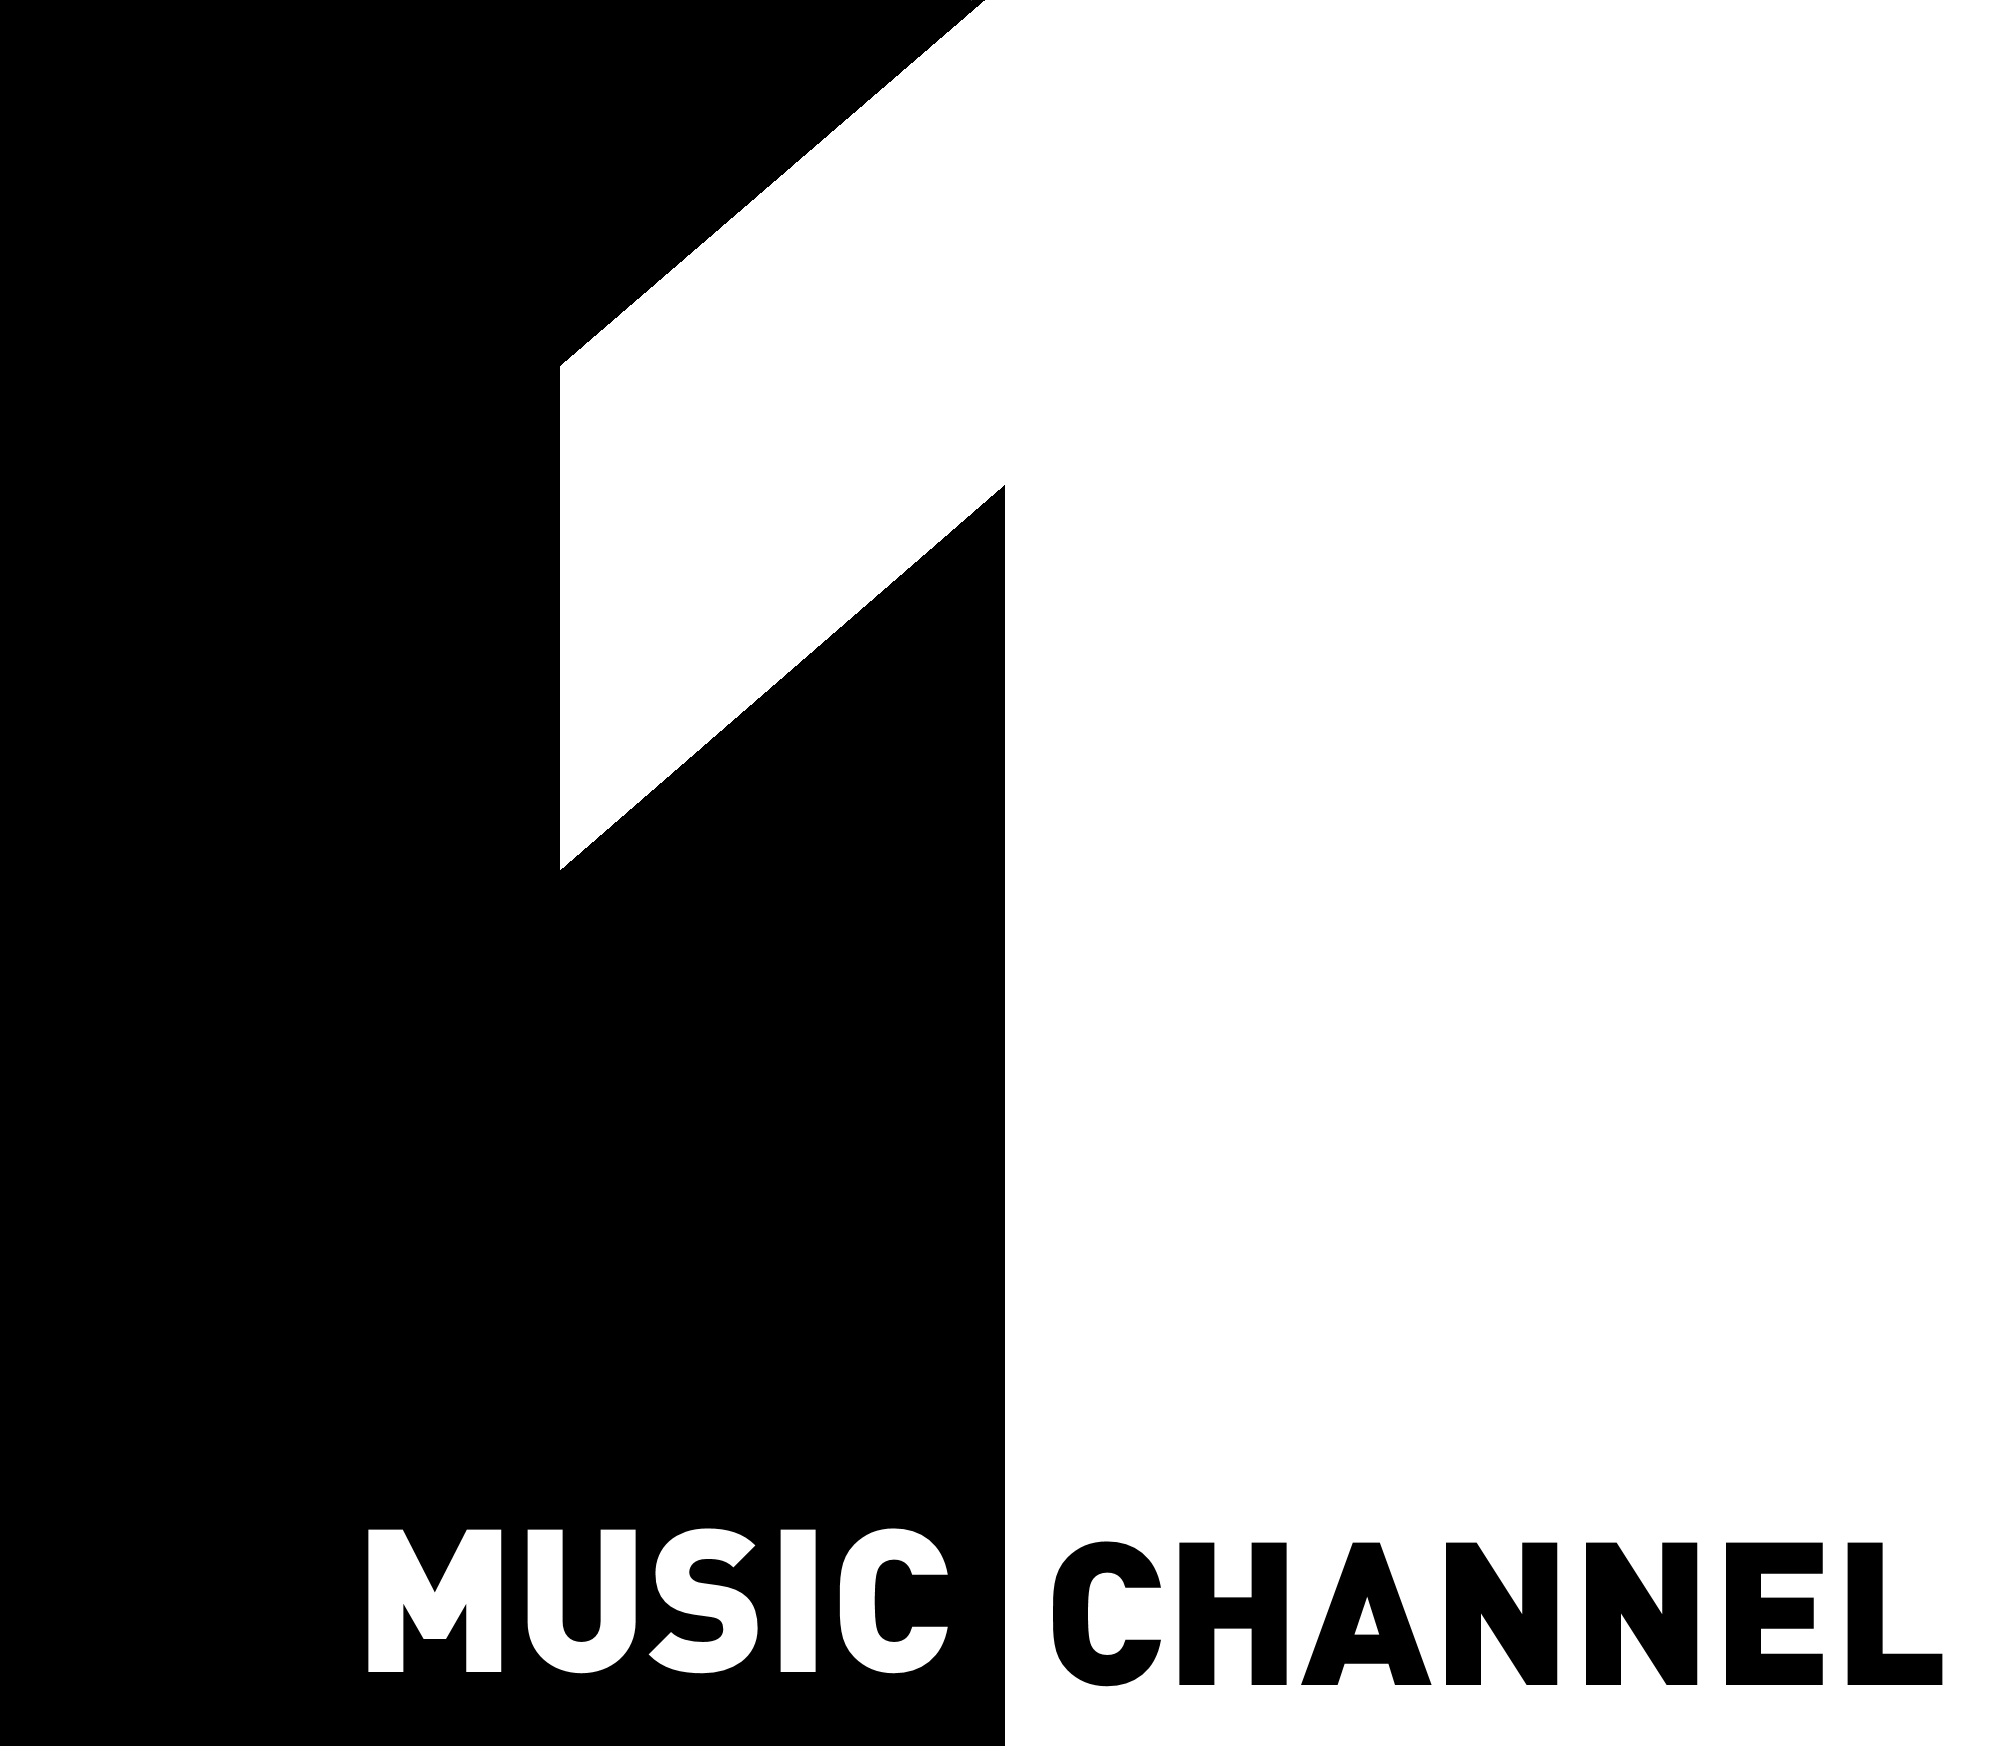 Music channel 1. Логотип канала первый музыкальный. 1 Music channel Romania. Live Music channel логотип Телеканал. Музыка из 1 11